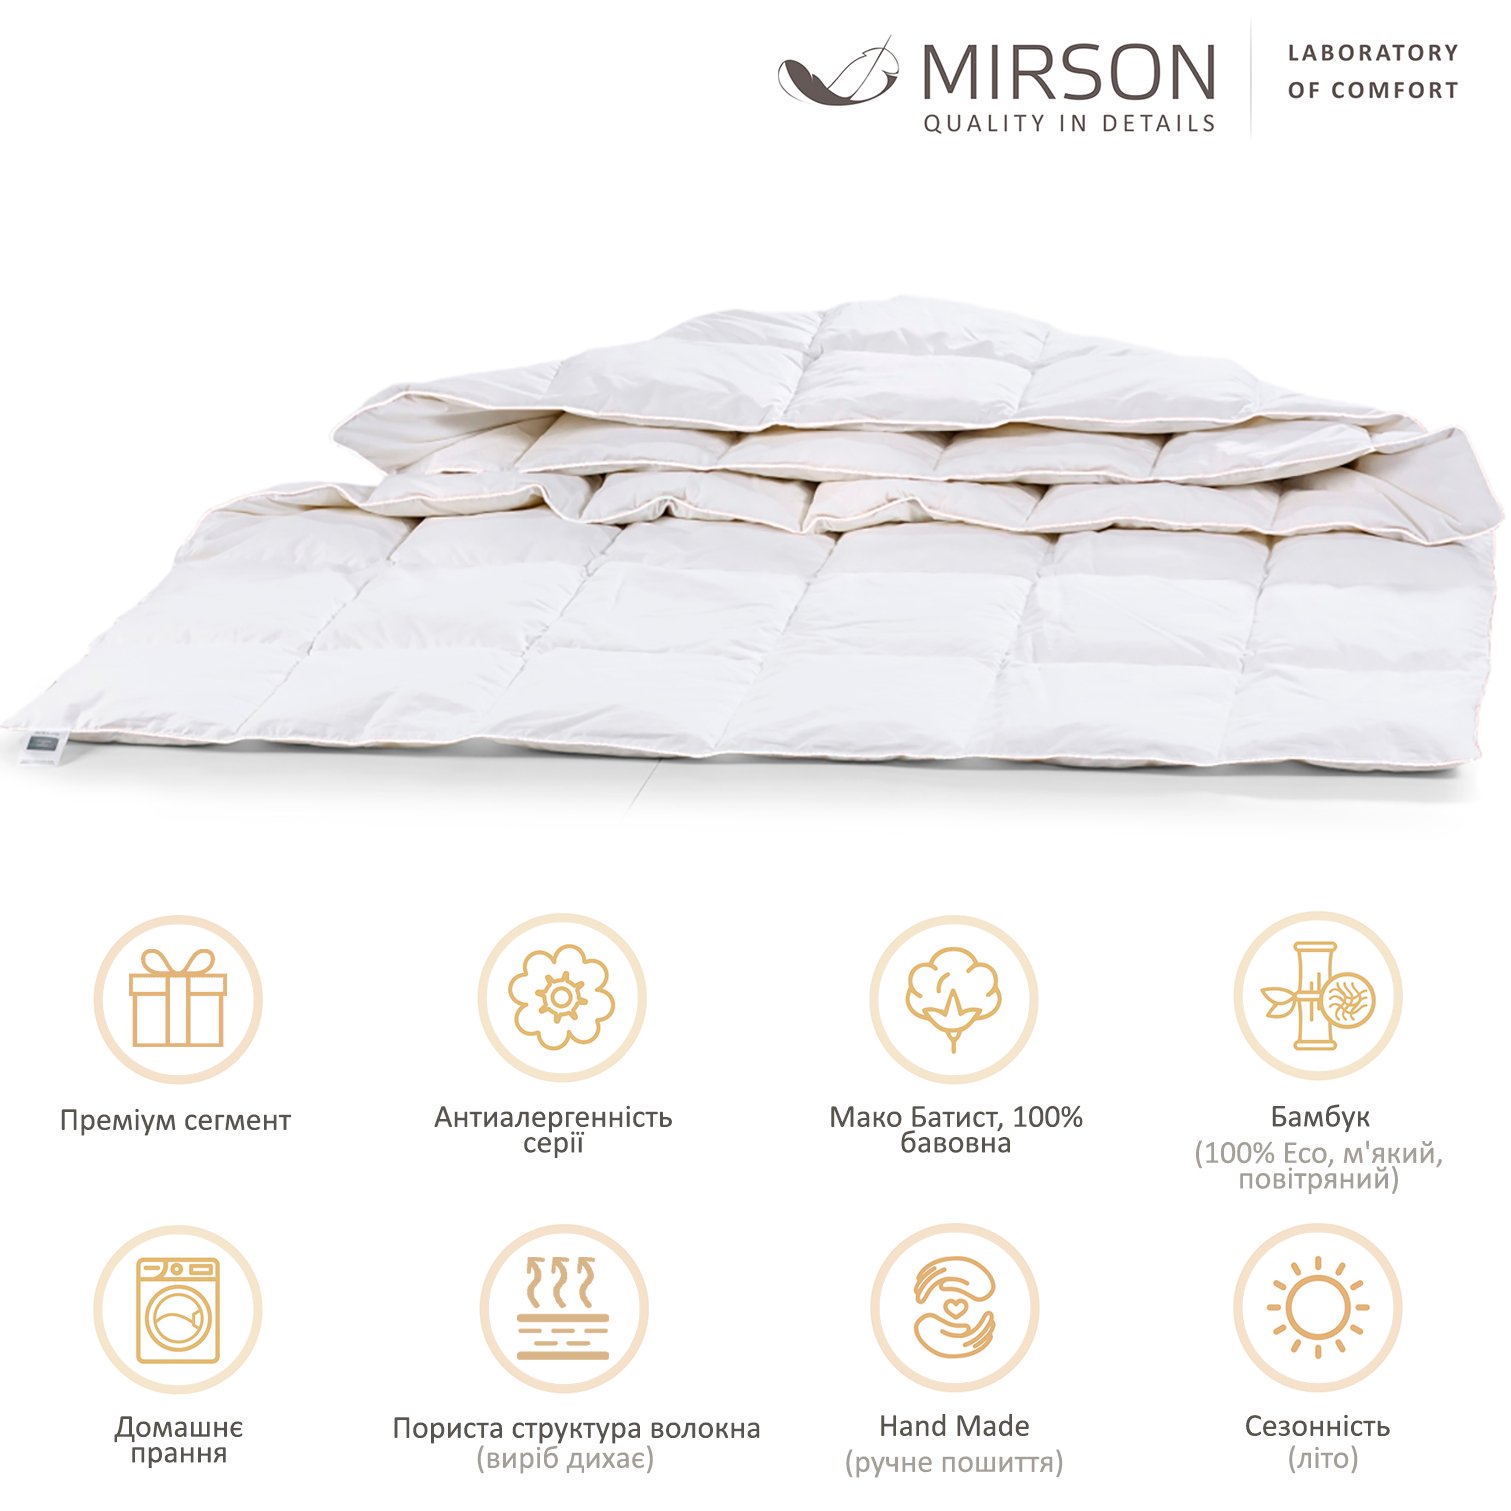 Ковдра бамбукова MirSon Luxury Exclusive №1375, літня, 110x140 см, біла - фото 6